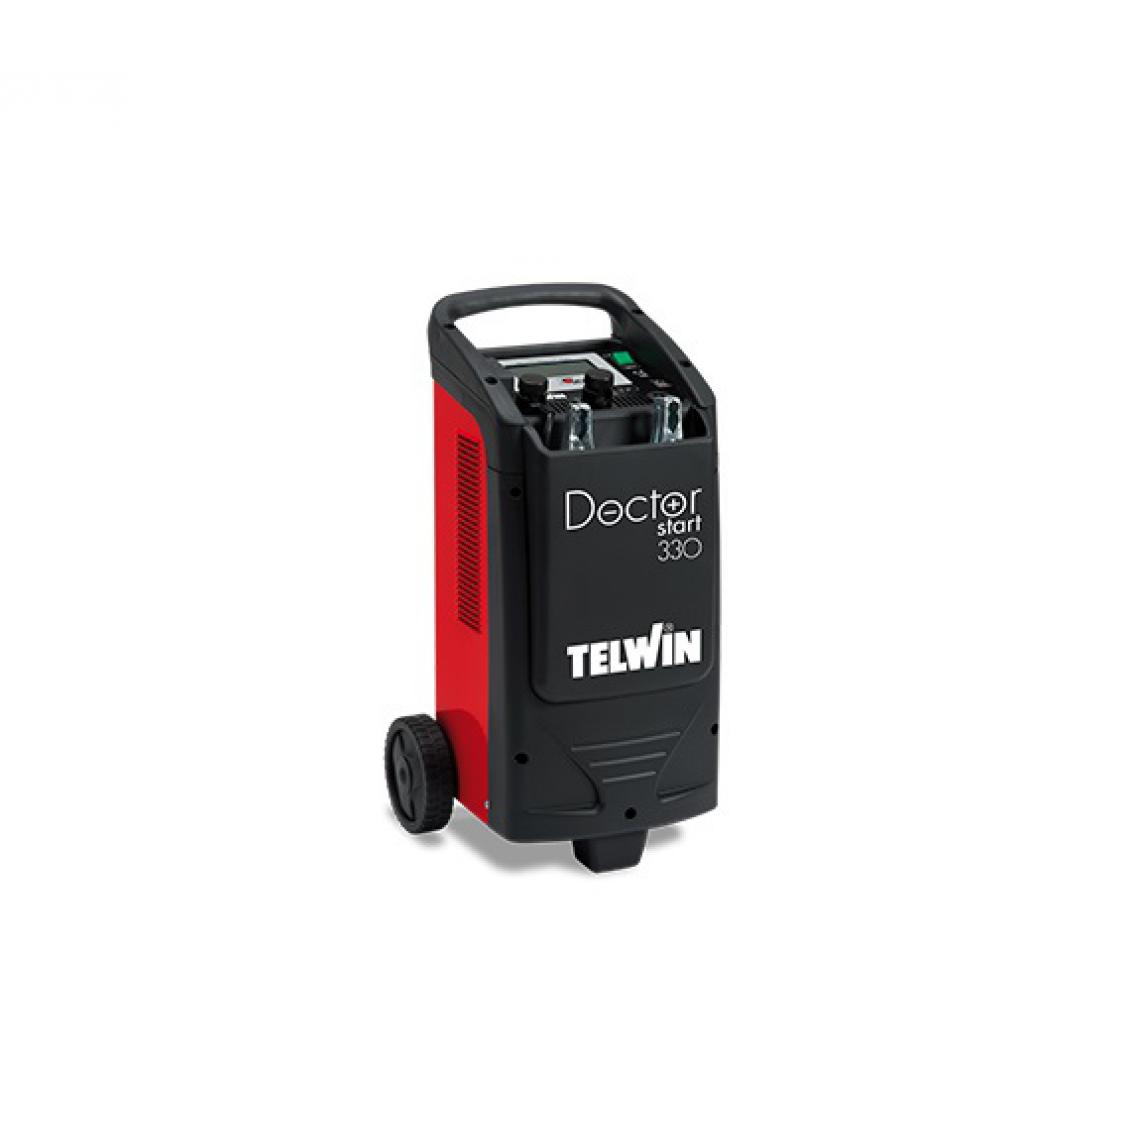 Telwin - Telwin - Chargeur de batterie multifonction 12 / 24 V puissance de charge 1 kW - DOCTOR START 330 - Consommables pour outillage motorisé